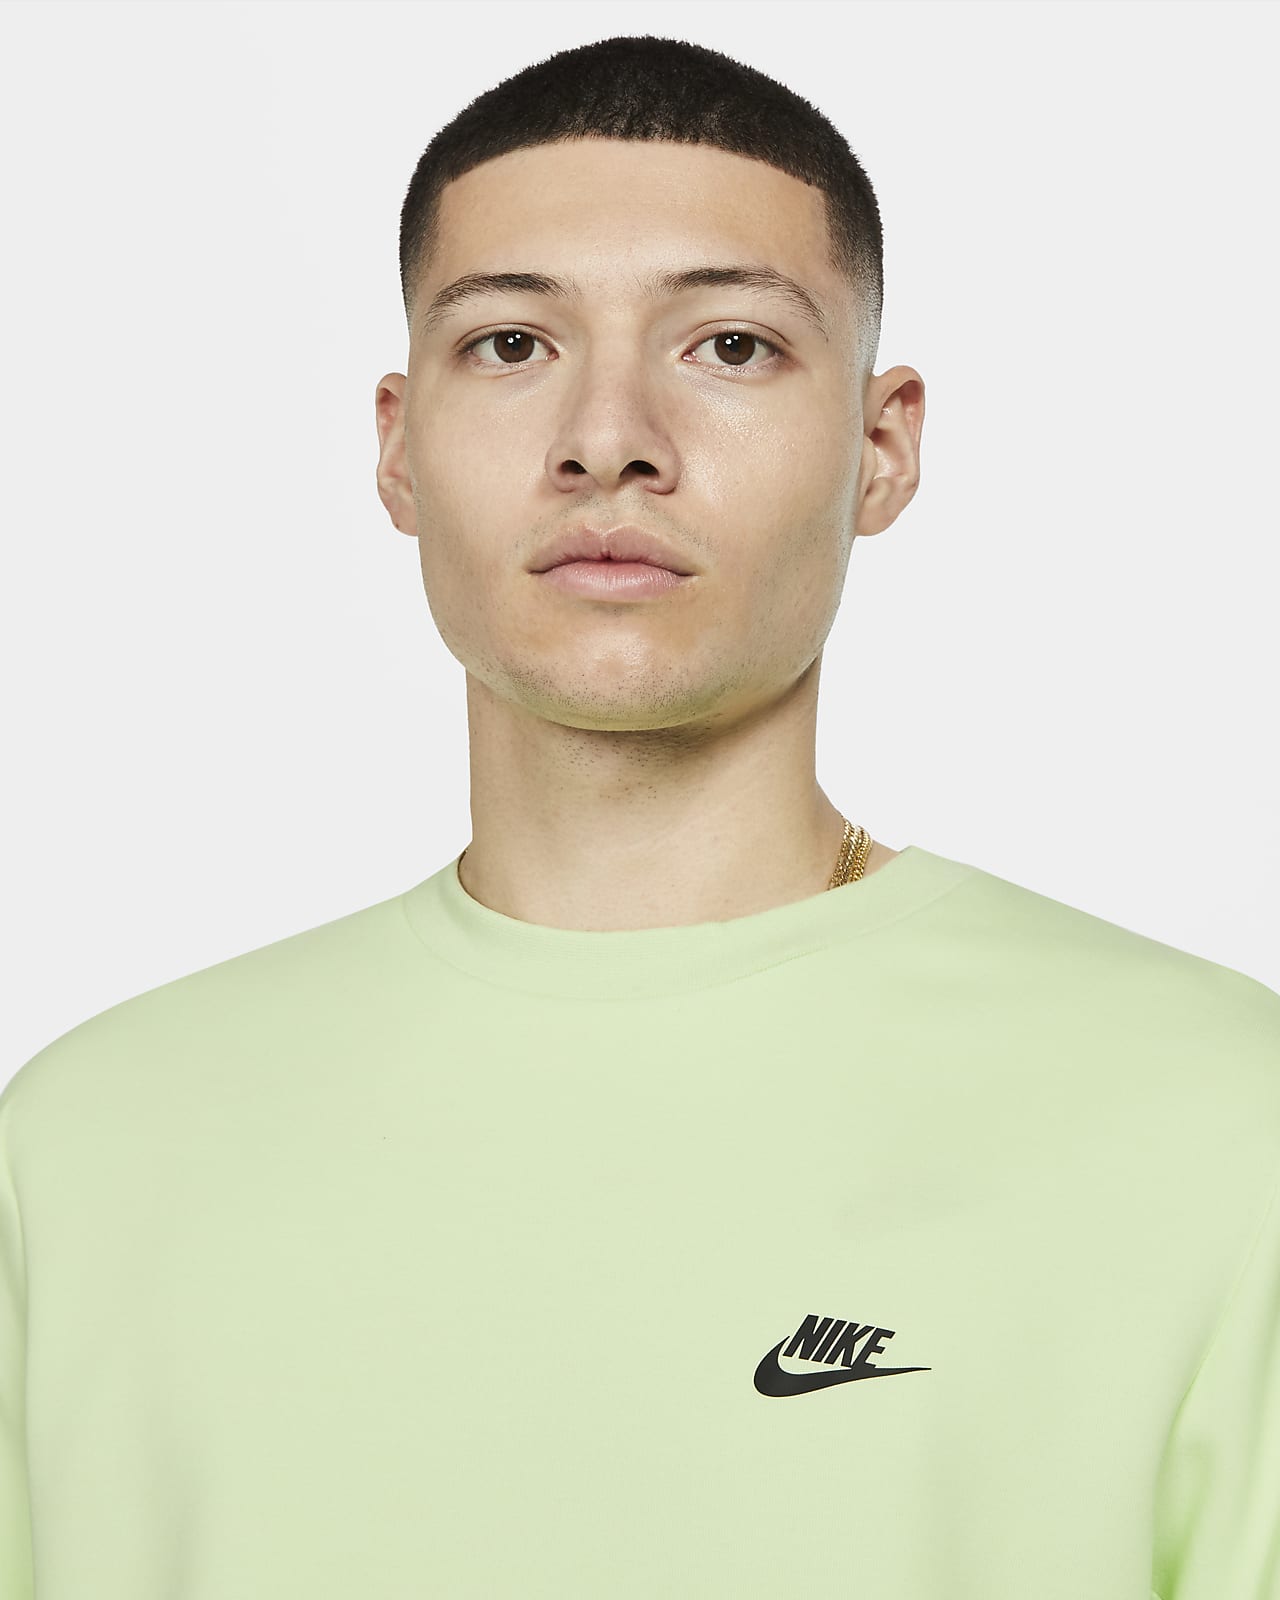 Nike Sportswear Tech Fleece Men's Crew 